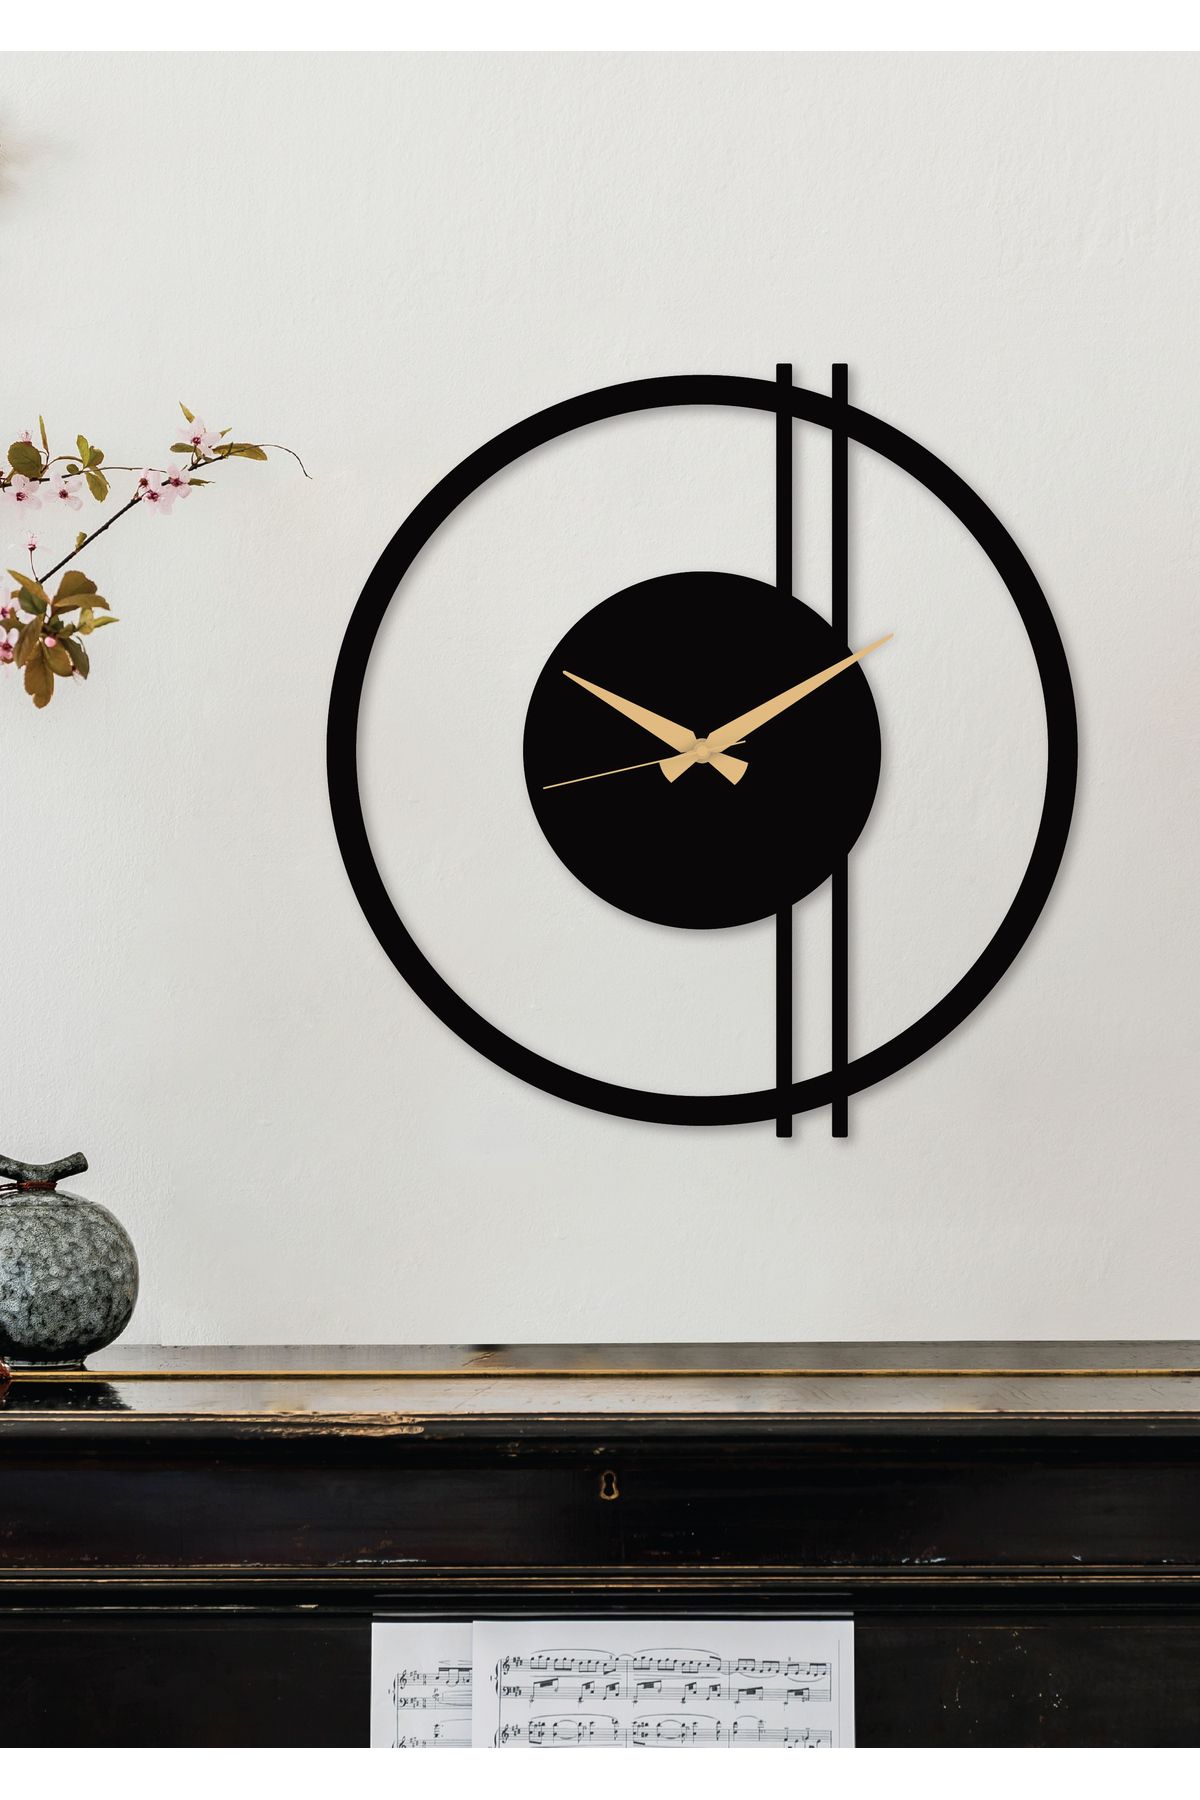 Gowpenart Double Line металлические черные настенные часы - Часы для дома/офиса - Подарочные часы - 100 x 97 см DoubleLineDS0100